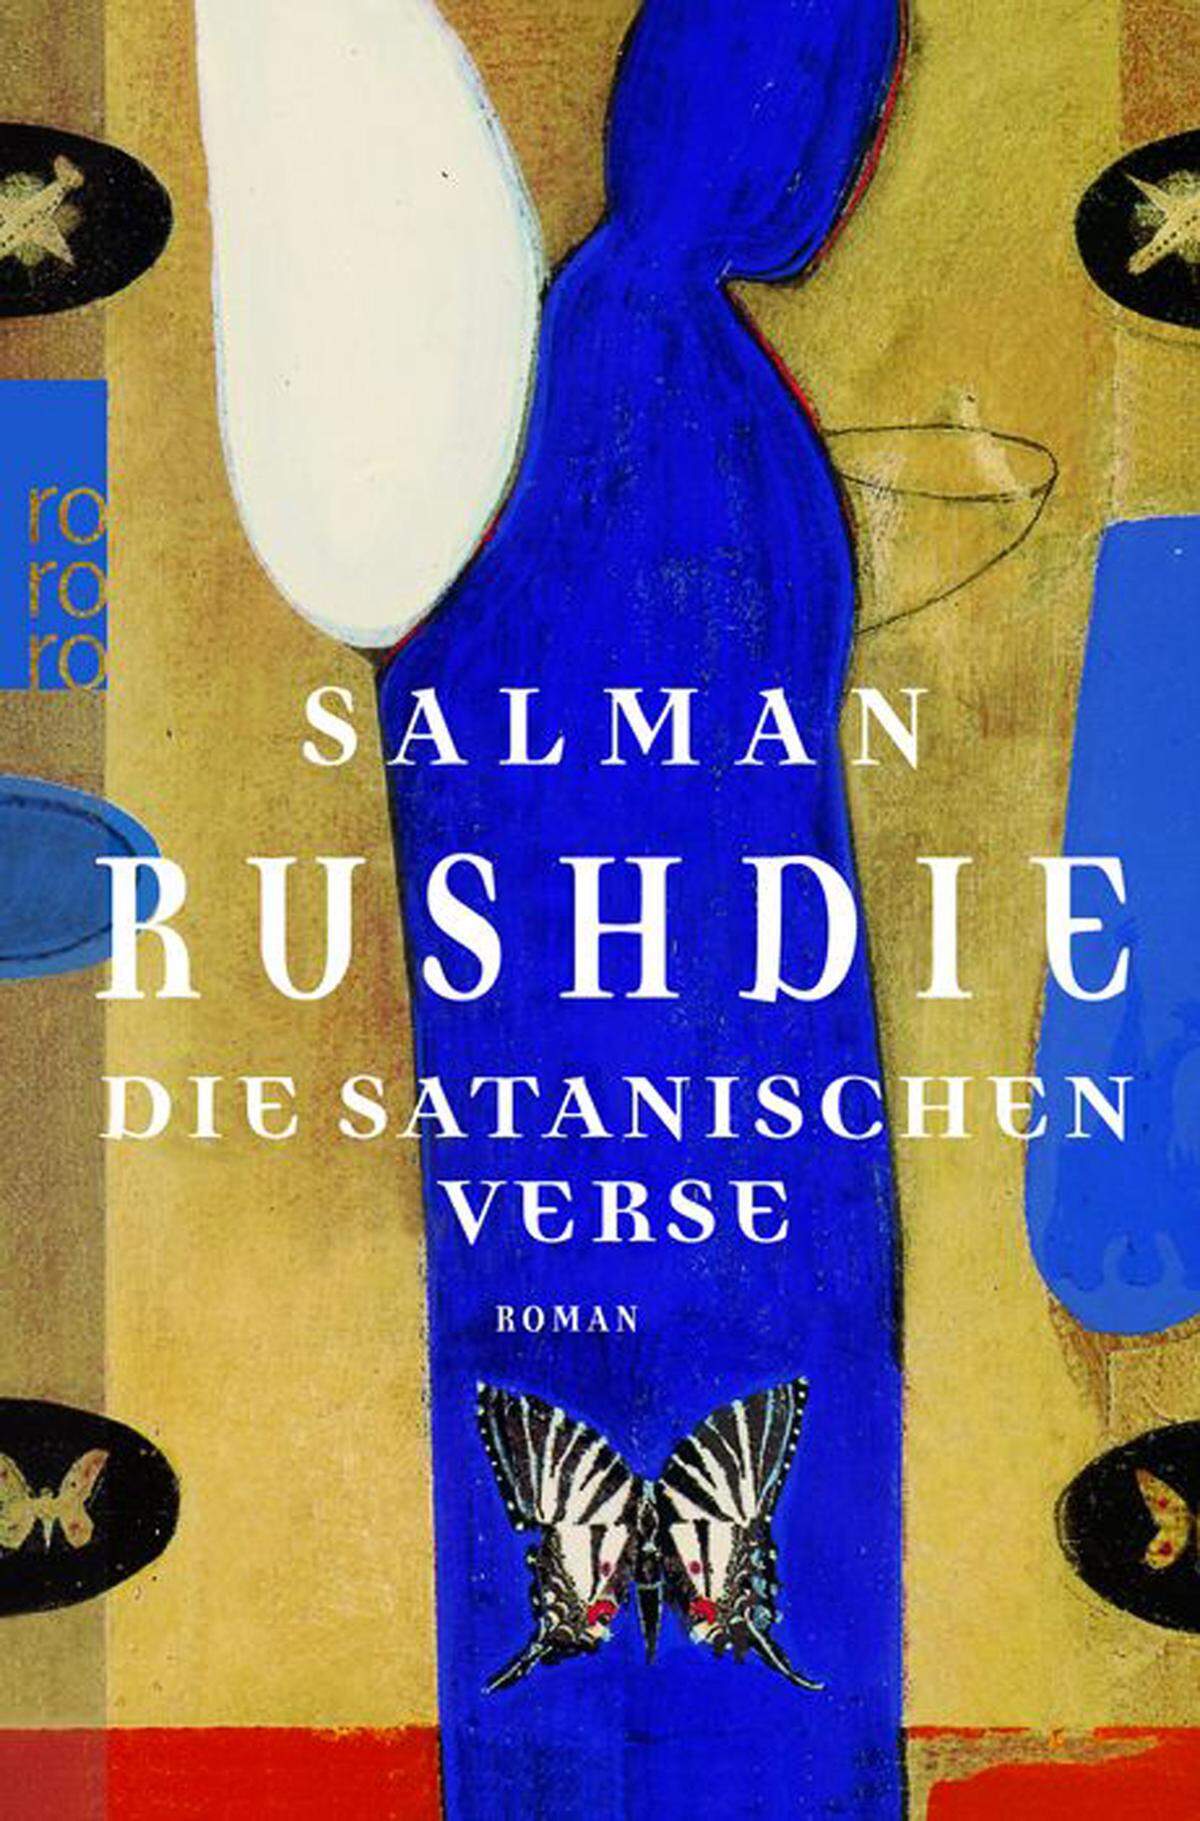 Um sein Leben musste der indisch-britische Bestseller Autor fürchten, als er Die Satanischen Verse veröffentlichte. Mitglieder der islamisch-schiitischen Glaubensgemeinschaft riefen zum Mord gegen den Autor Salman Rushdie auf. Lange Zeit wurde das Buch des Schriftstellers, der von der Queen zum Ritter geschlagen wurde, aus Angst des Verlags nicht veröffentlicht.